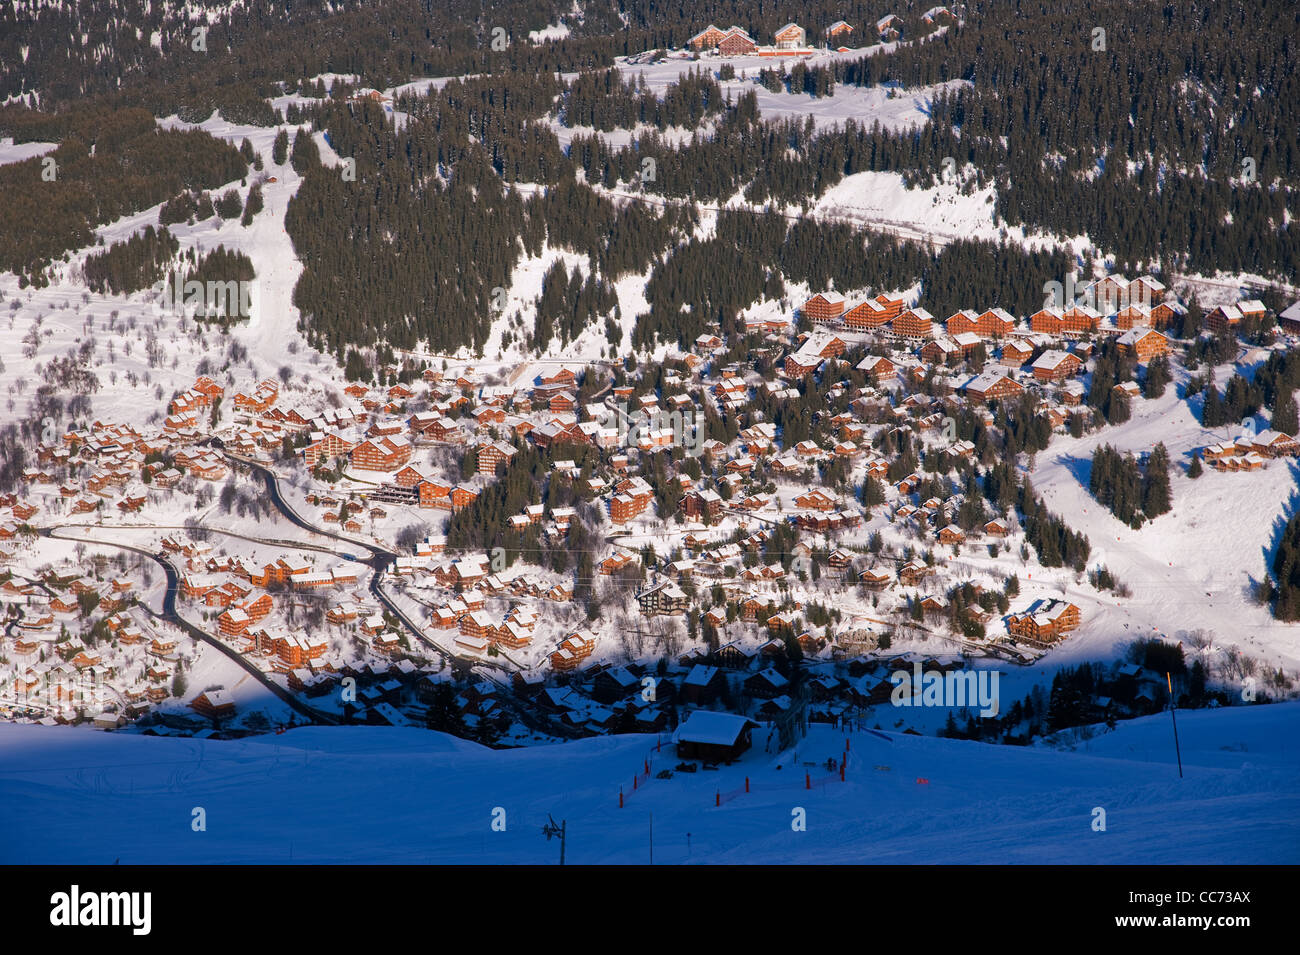 Méribel et Courchevel dans les Trois Vallées (3 vallées) stations de ski dans la vallée de la Tarentaise dans les Alpes françaises. Décembre 2011 Banque D'Images